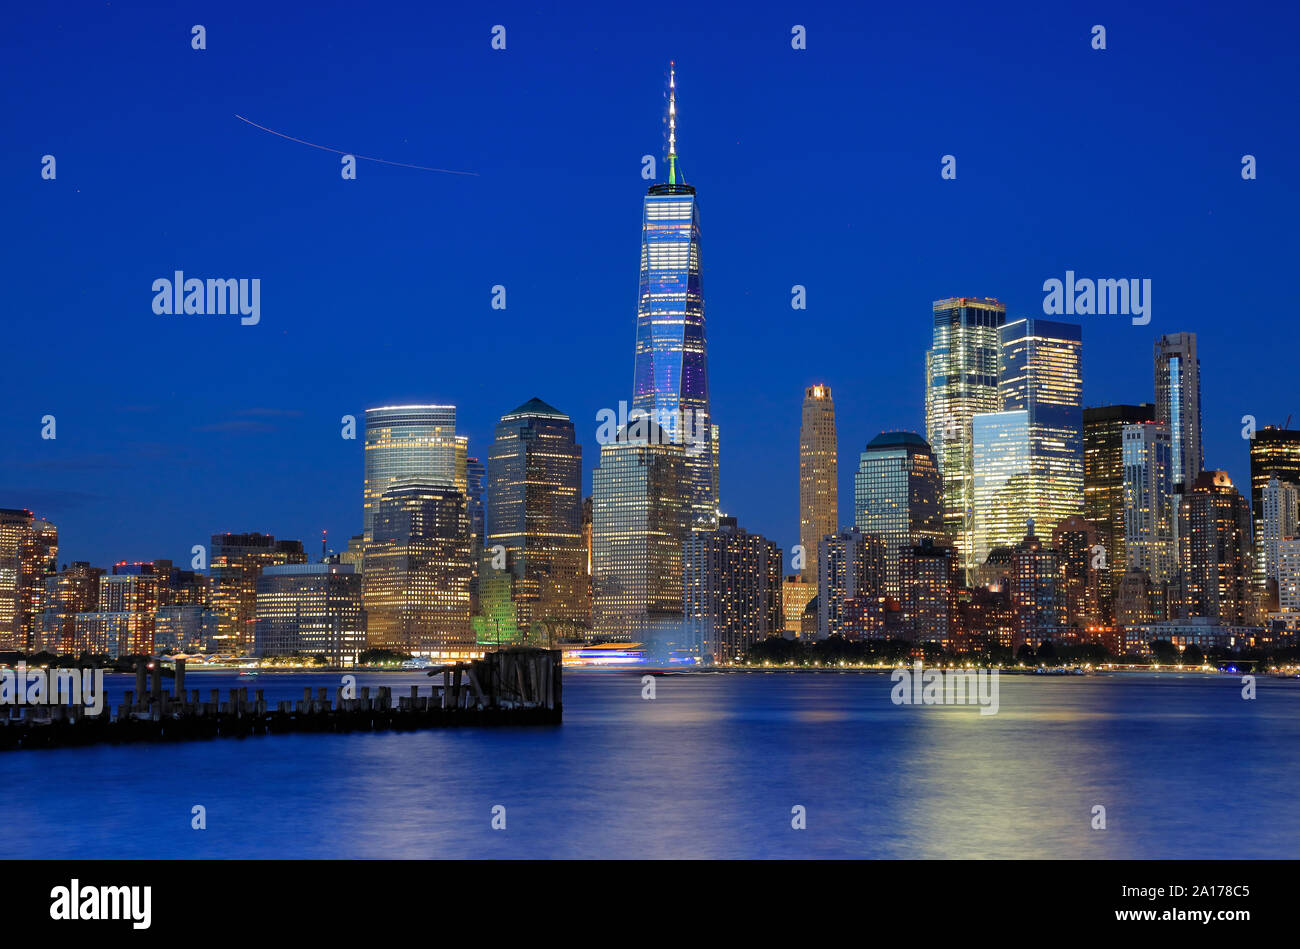 Vue de la nuit de One World Trade Center et les toits de Manhattan avec Hudson River en premier plan.New York City.USA Banque D'Images